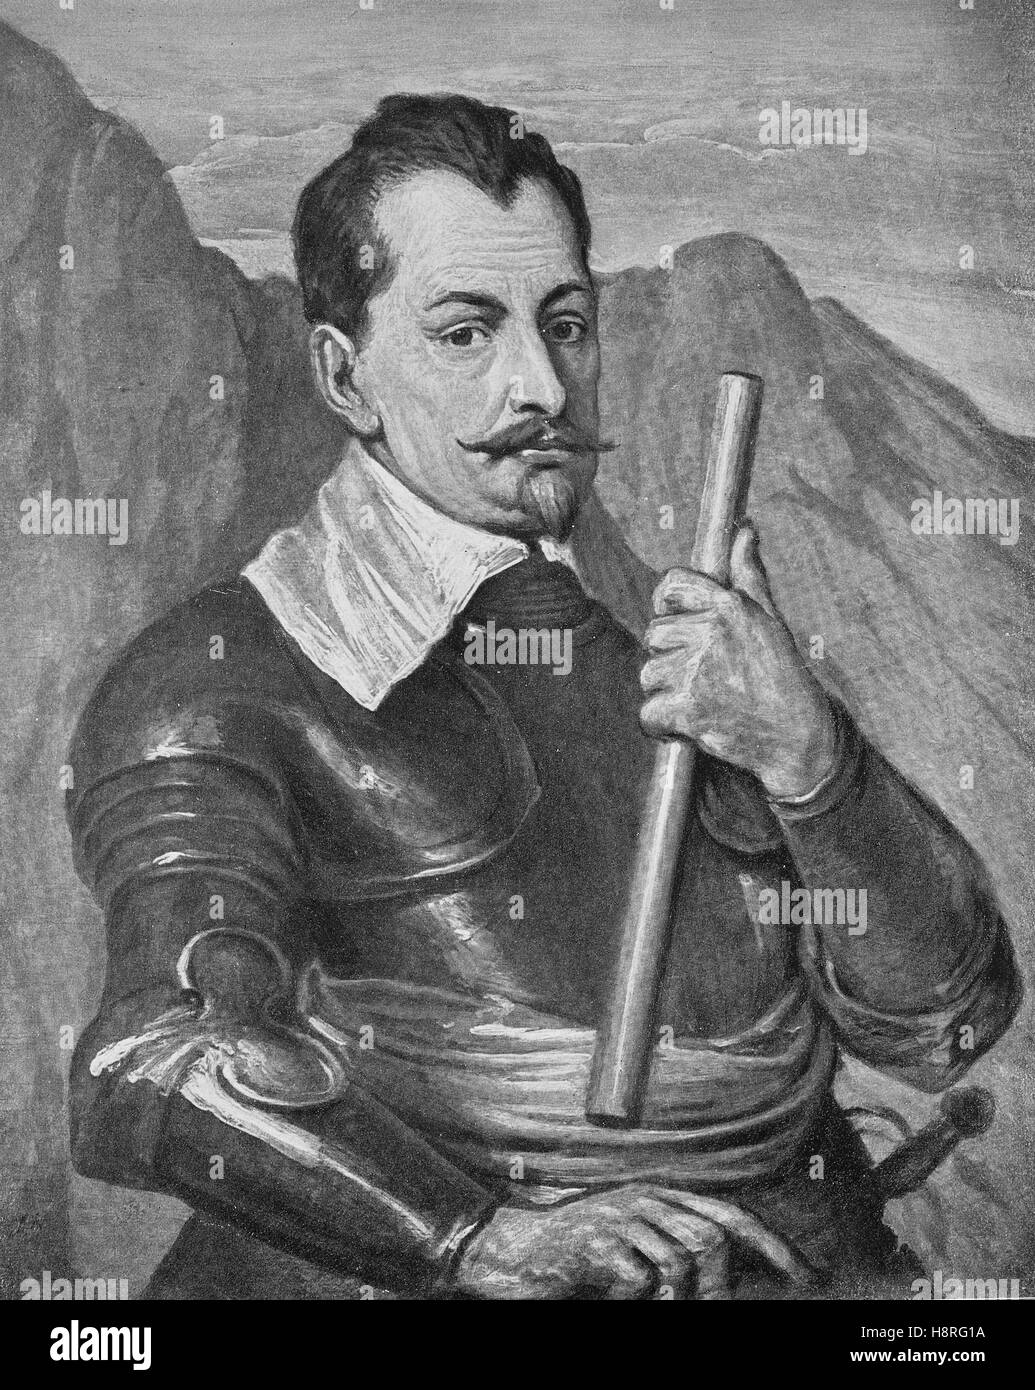 Albrecht Wenzel Eusebius von Wallenstein, anche von Waldstein, era un boemo leader militare e politico che ha offerto i suoi servizi e un esercito di 30.000 a 100.000 uomini, durante la guerra dei trenta anni, al Sacro Romano Imperatore Ferdinando II Foto Stock